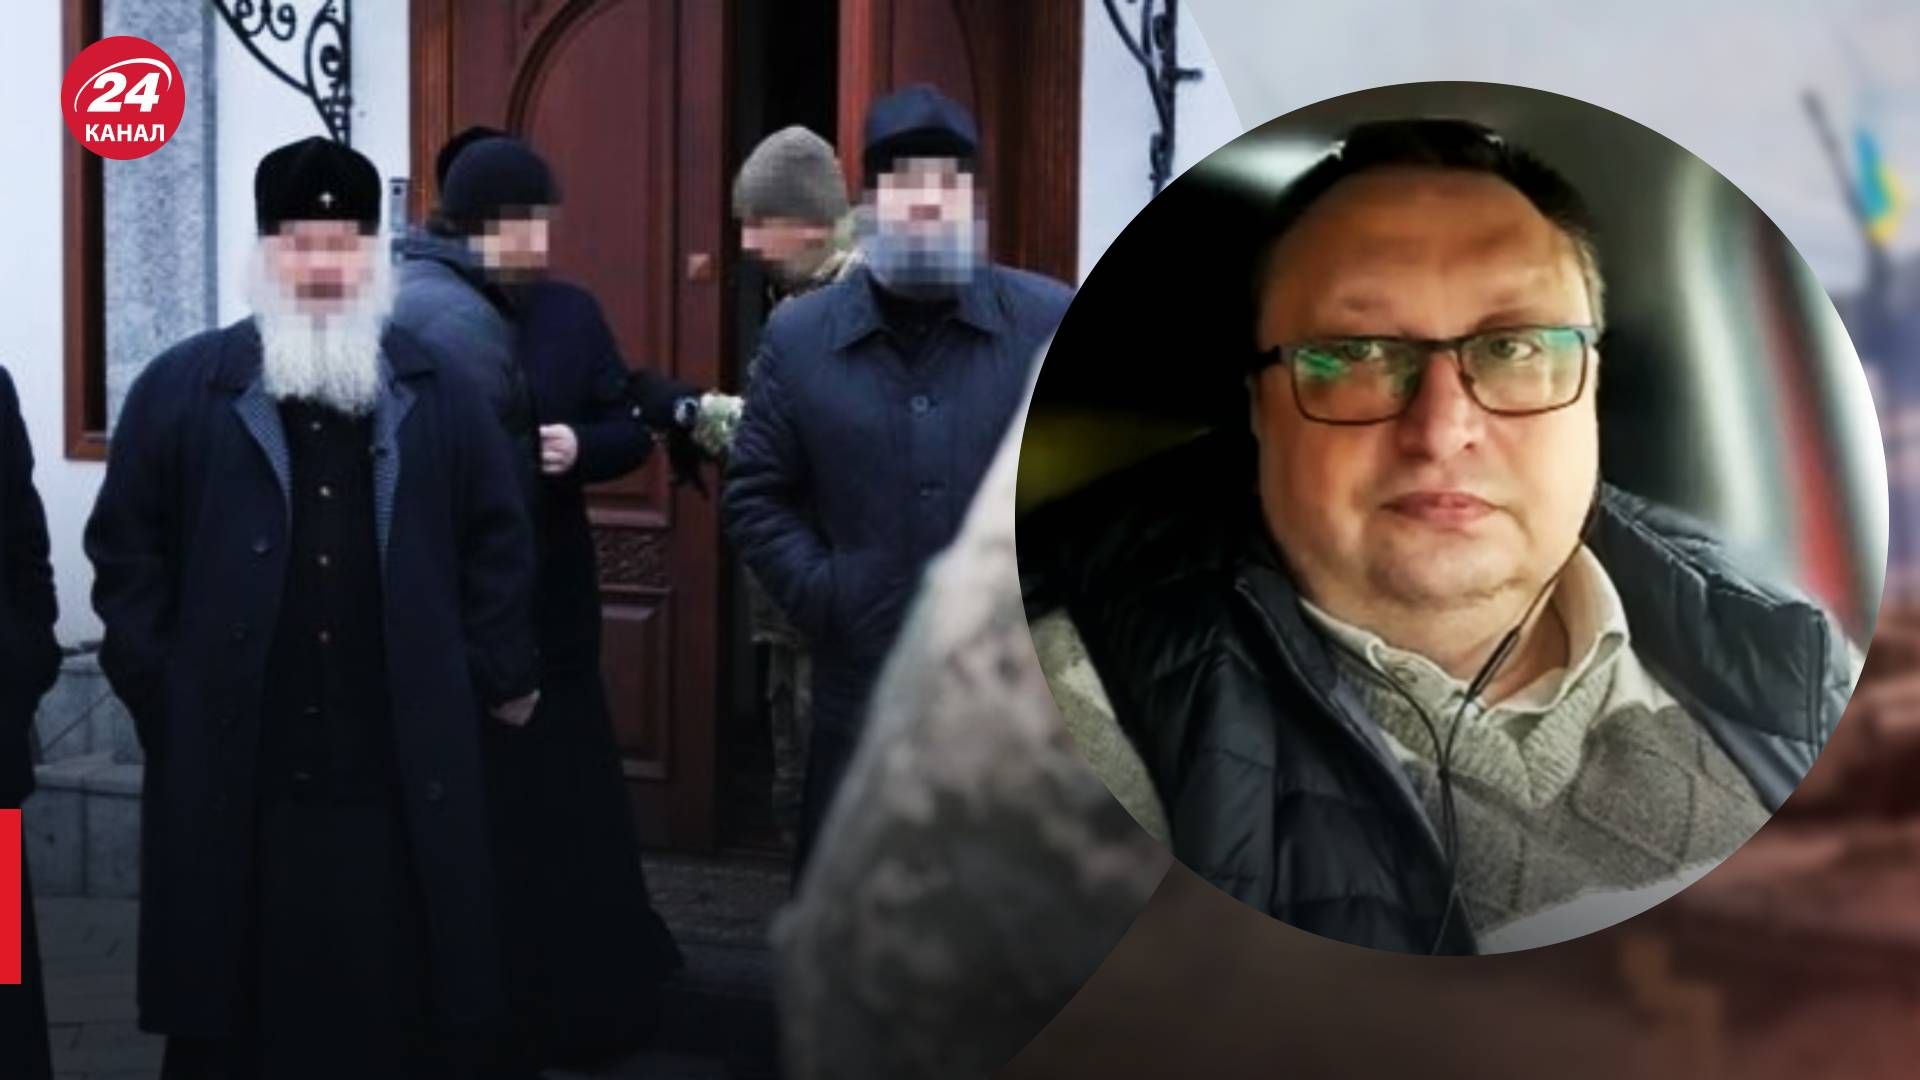 Скандалы вокруг московского патриархата в Киево-Печерской лавре - 24 Канал